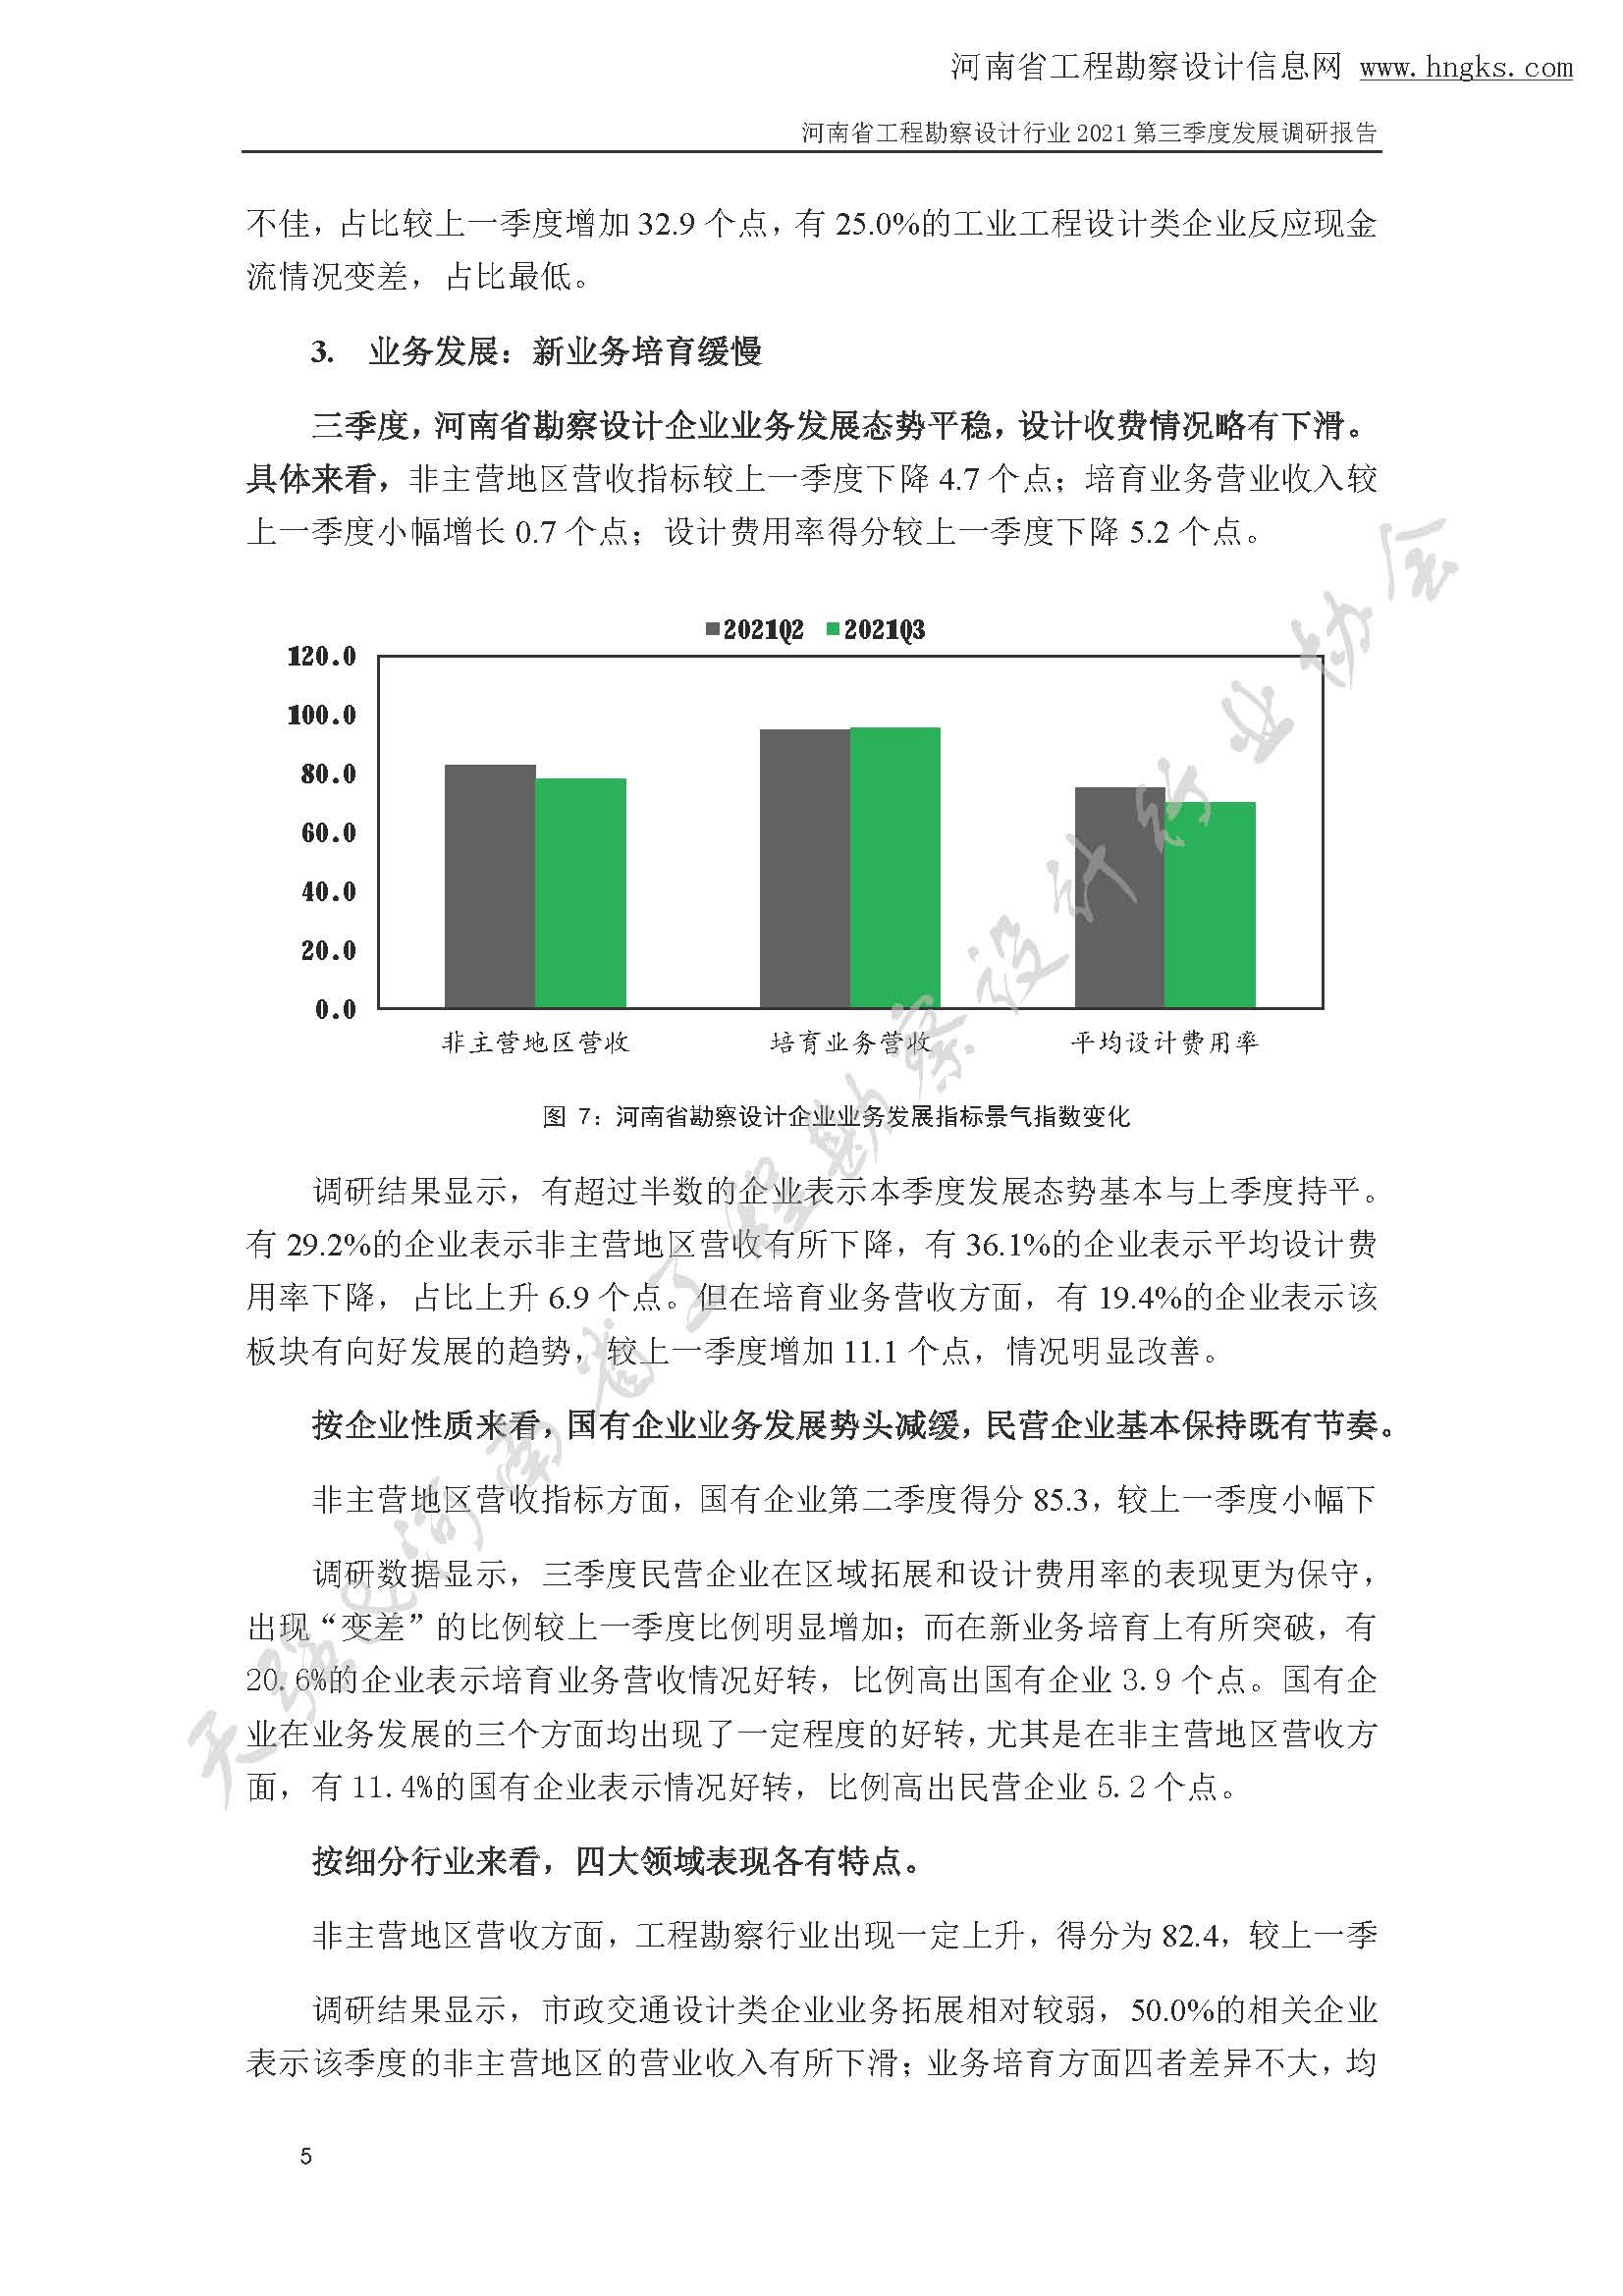 河南省工程勘察设计企业2021年第三季度发展调研报告-公开版_页面_08.jpg